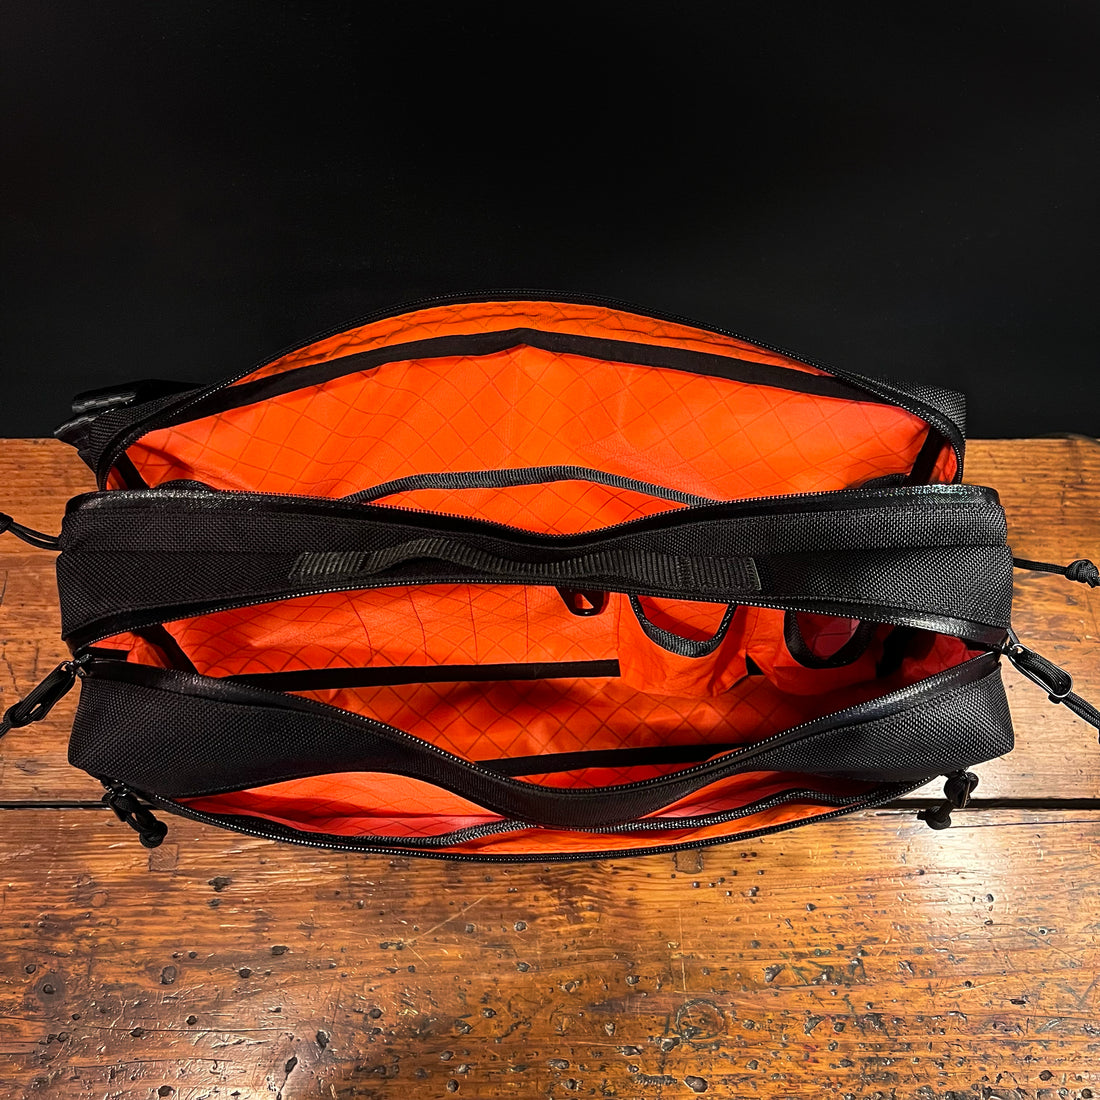 Buy NFI Essentials Sling Bag for Men, Shoulder Bag with